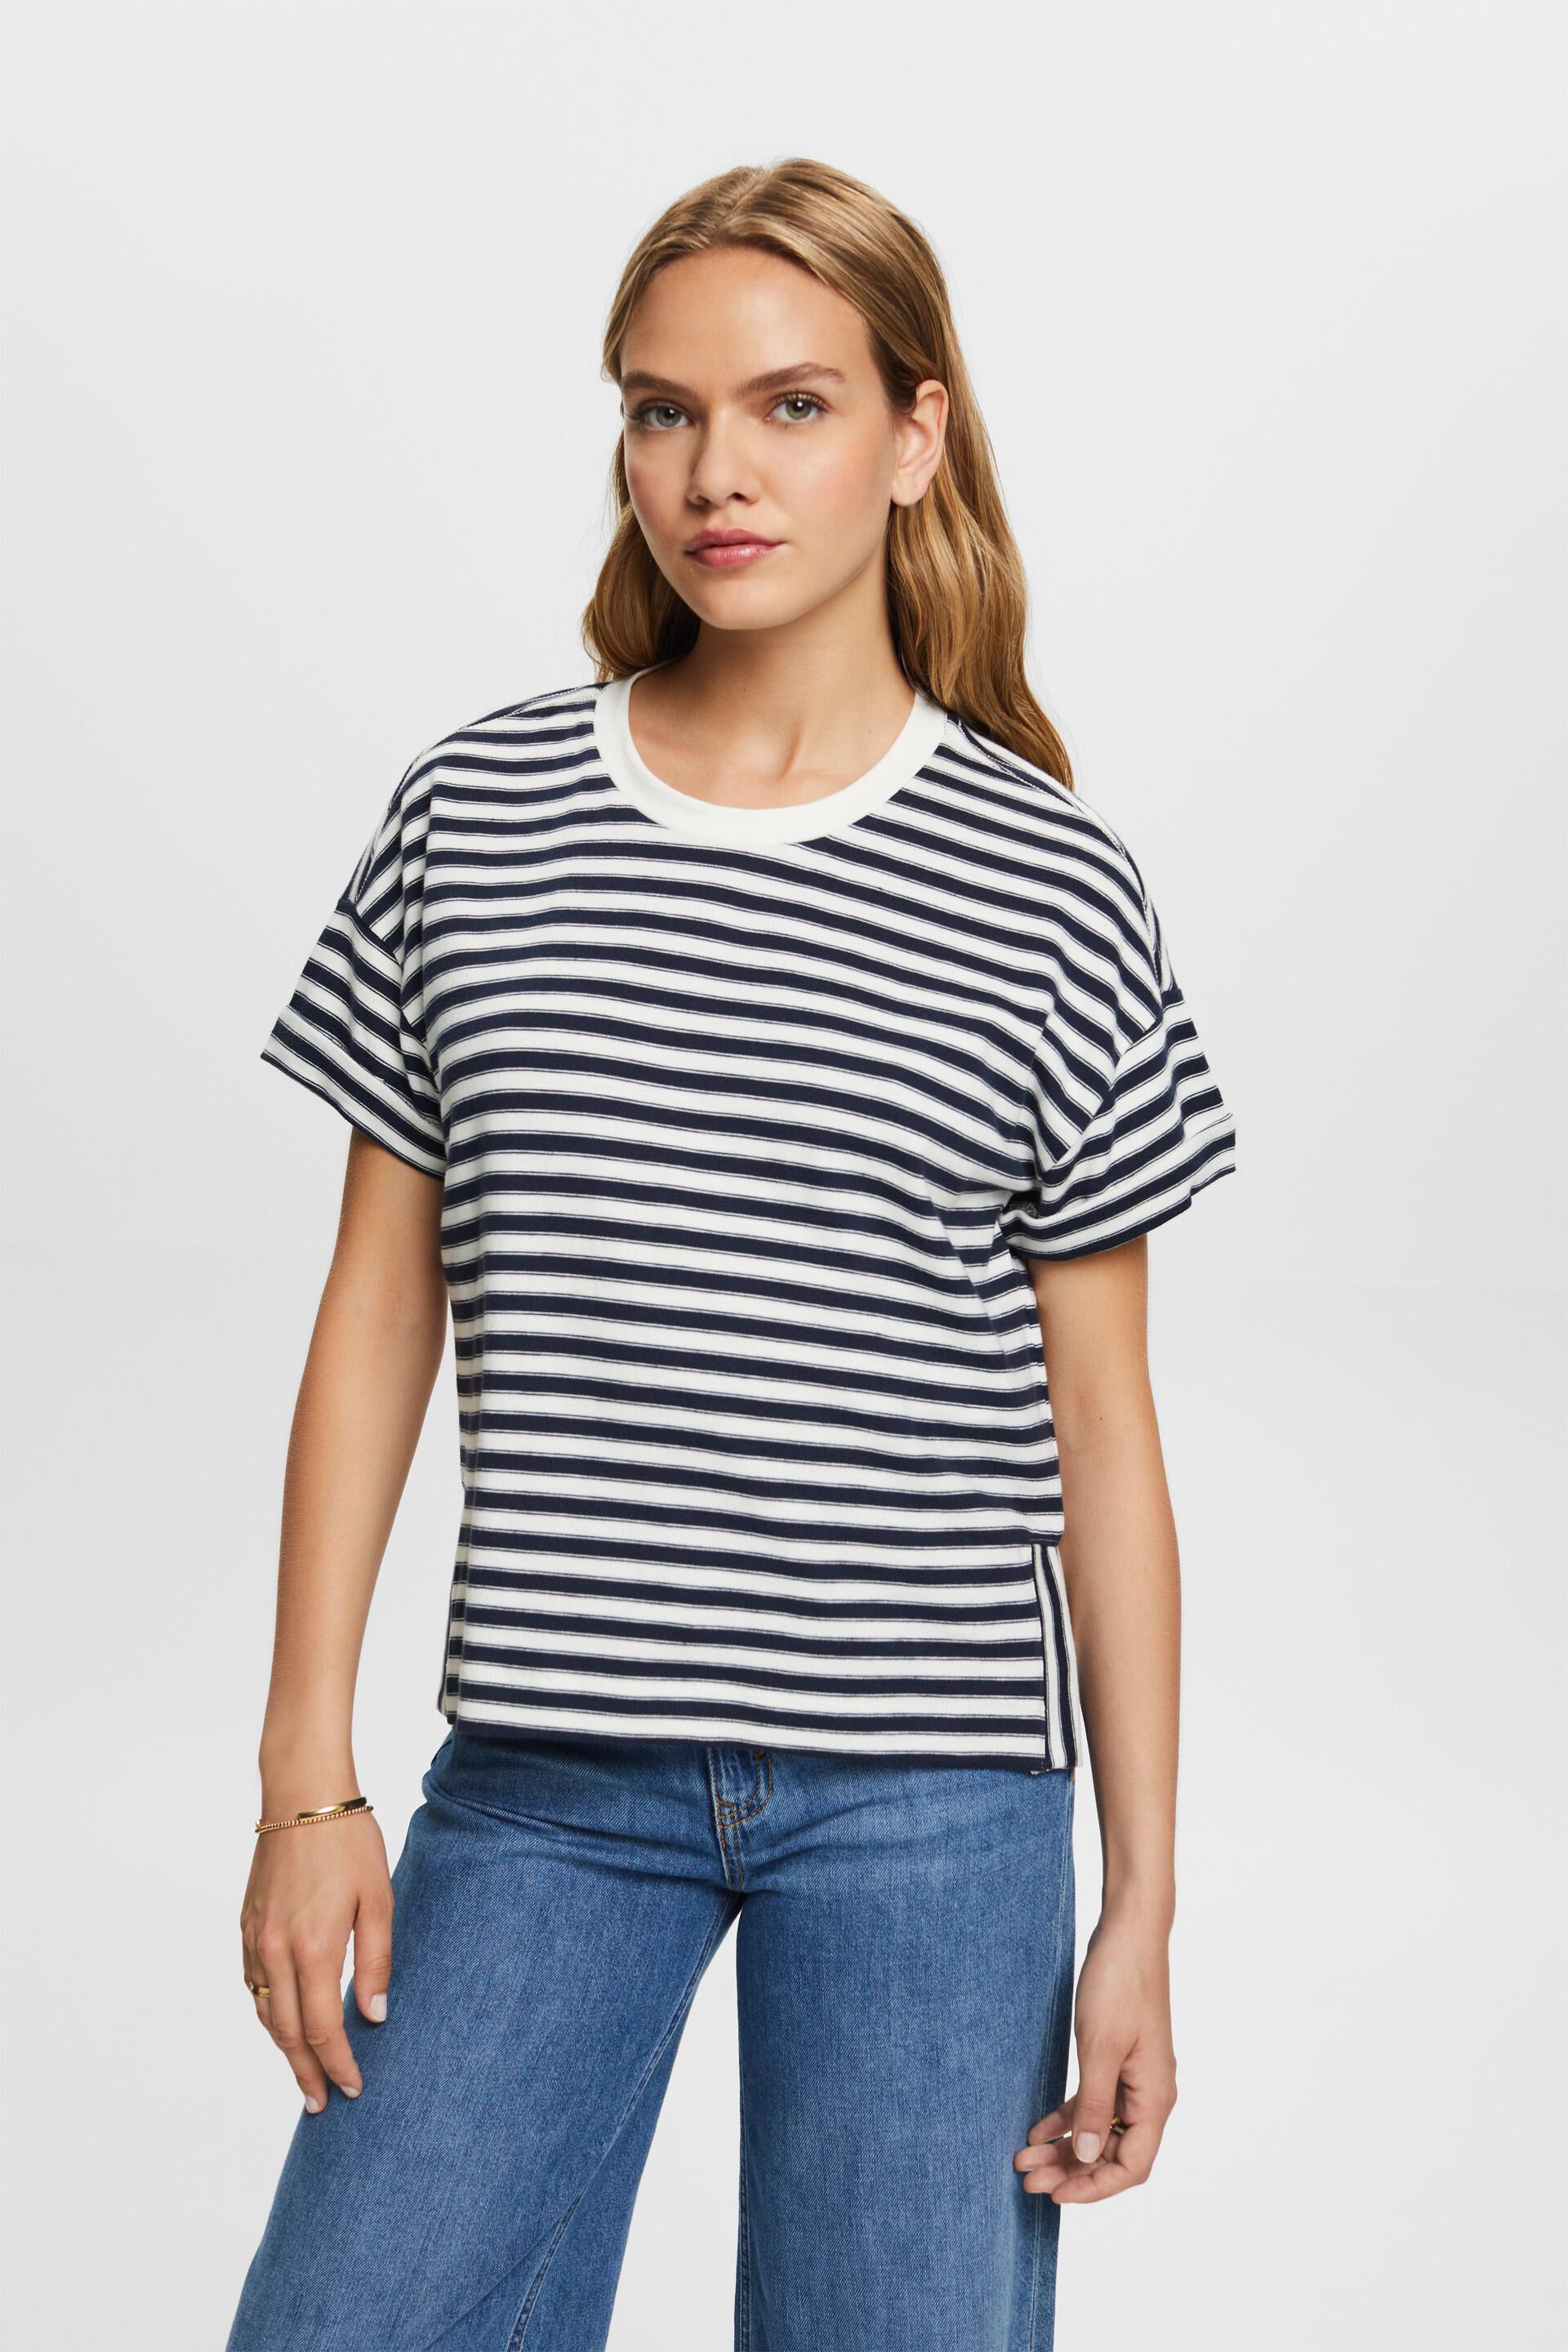 Esprit 100% cotton t-shirt, Striped